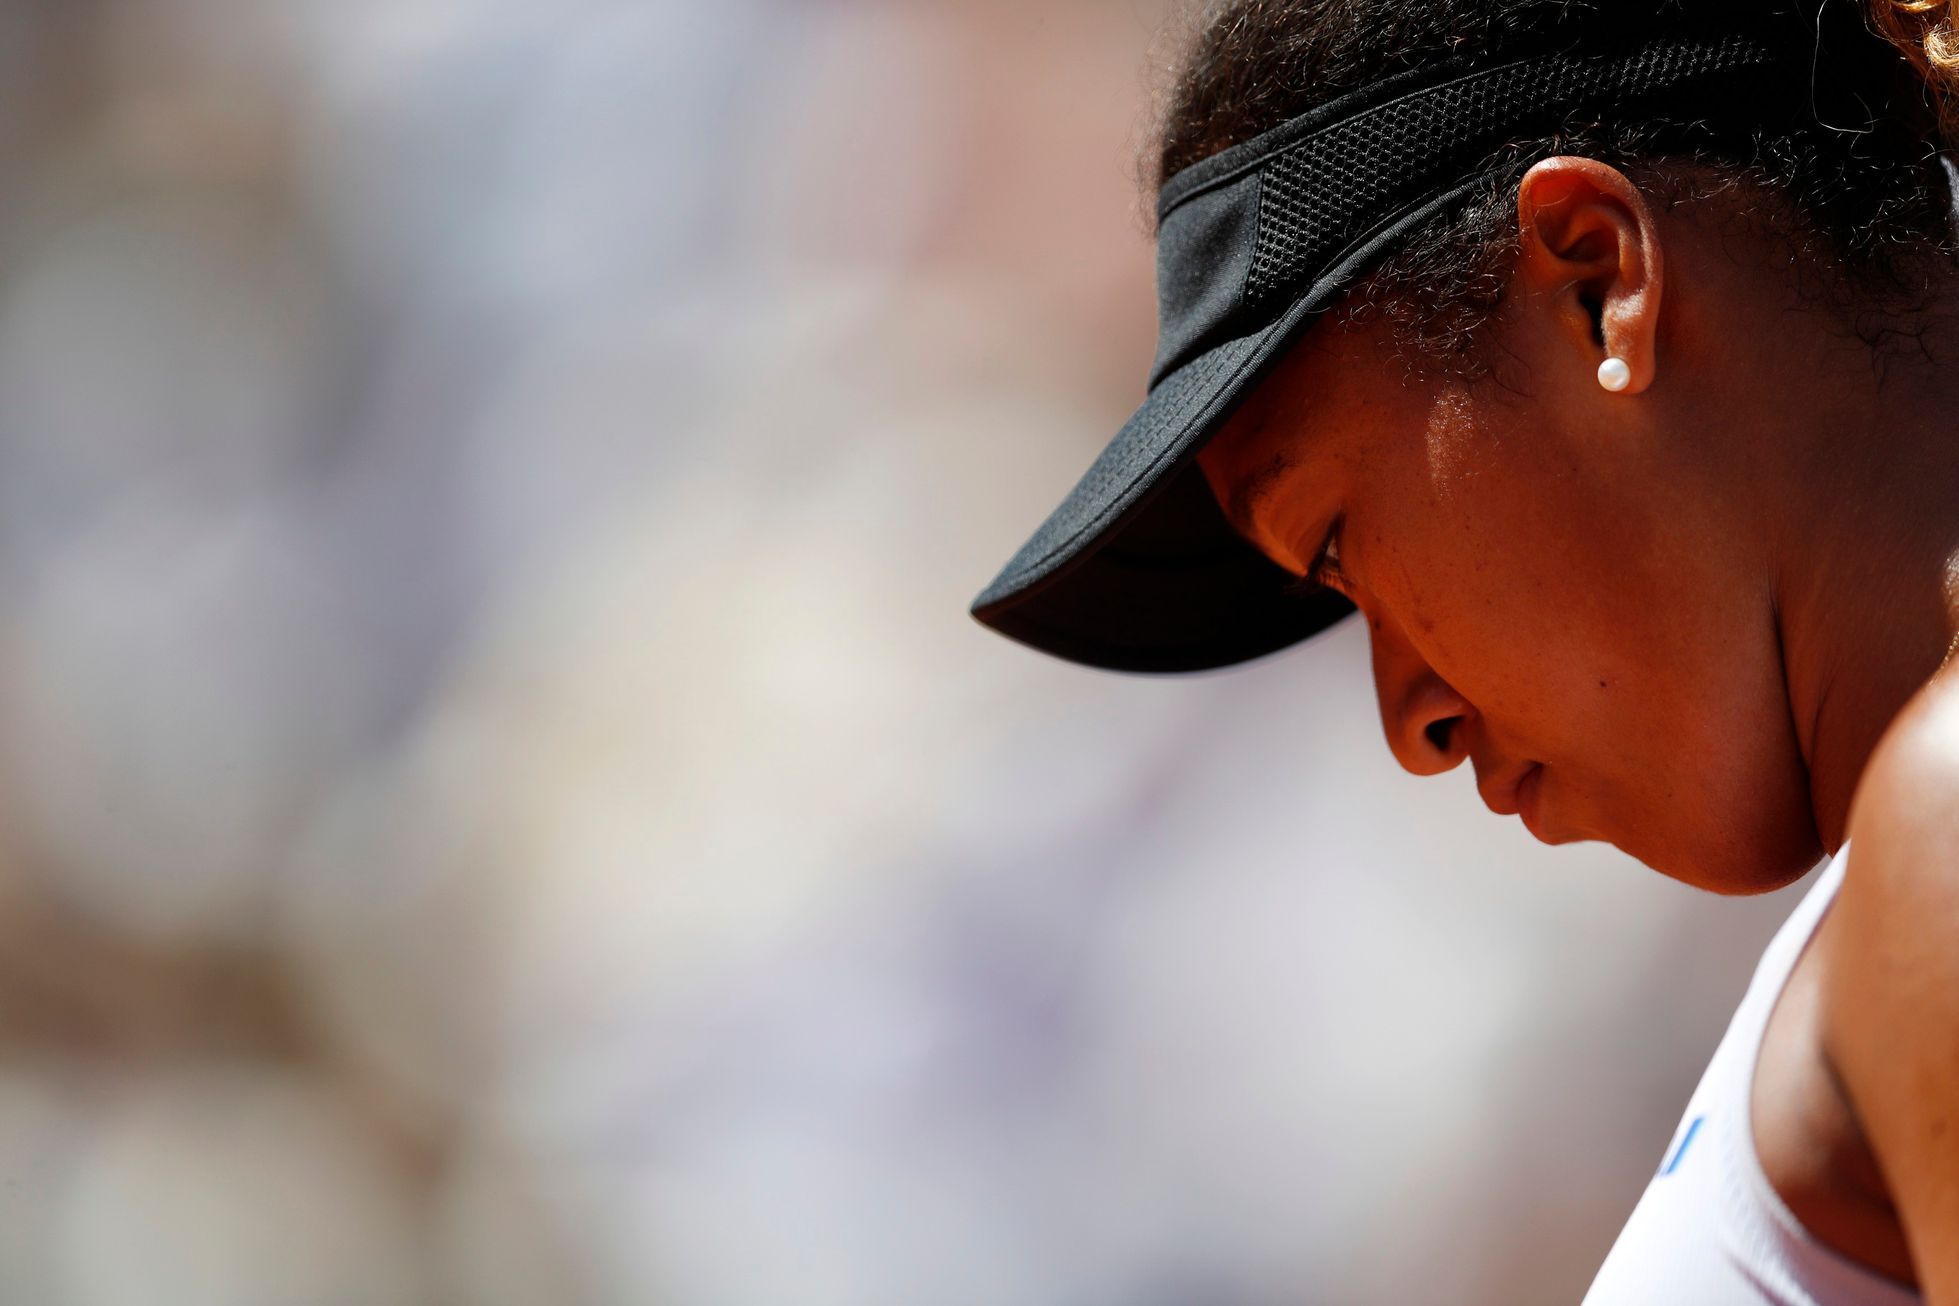 Naomi Osakaová ve třetím kole French Open 2019 podlehla Kateřině Siniakové